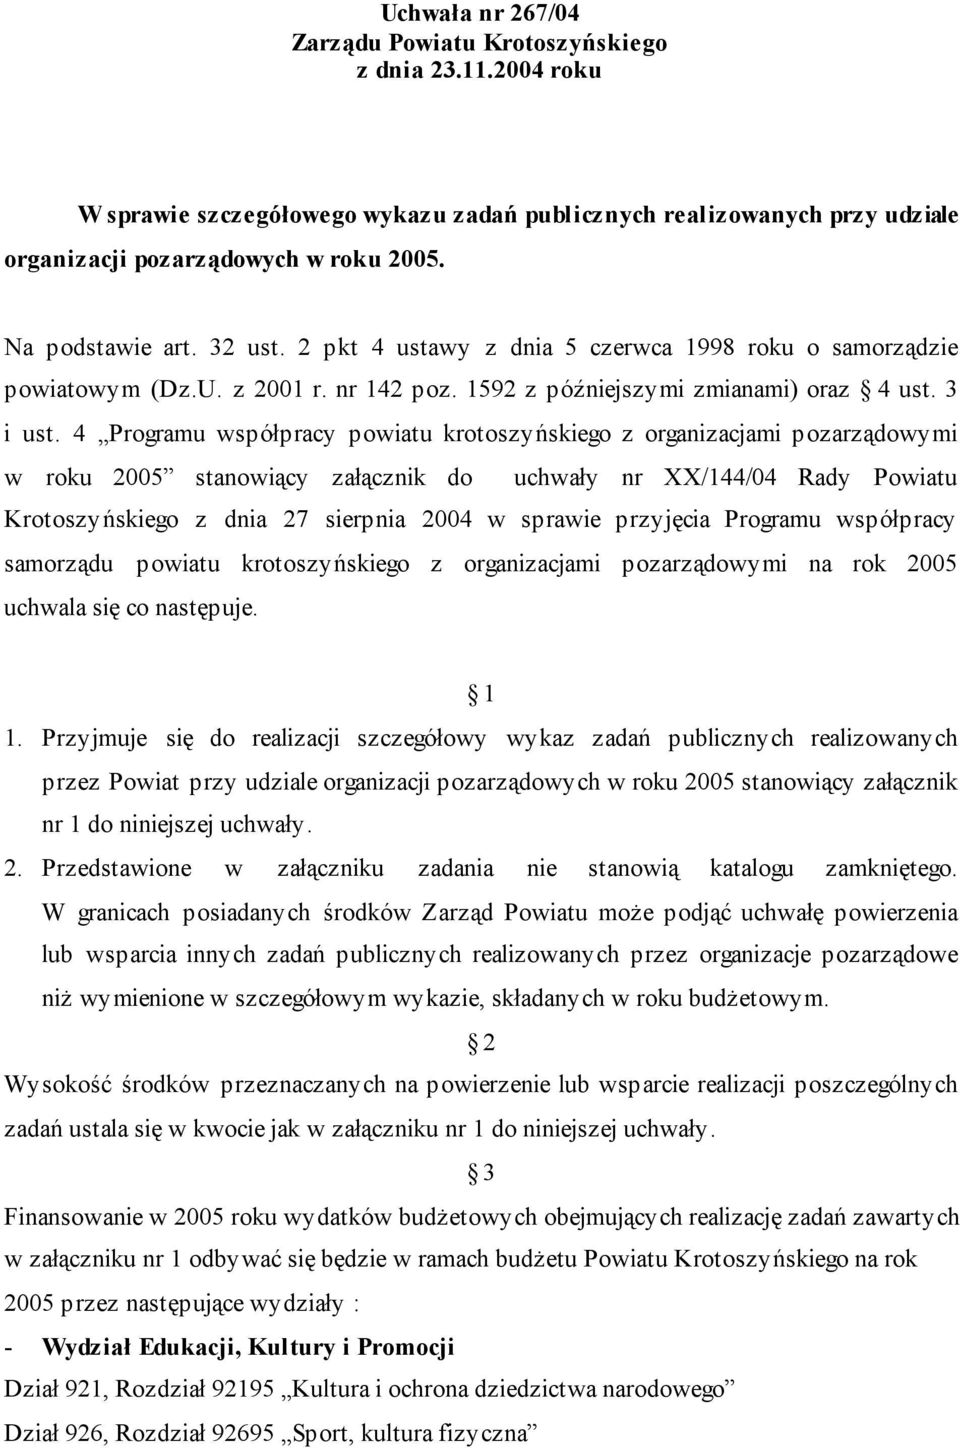 4 Programu współpracy powiatu krotoszyńskiego z organizacjami pozarządowymi w roku 2005 stanowiący załącznik do uchwały nr XX/144/04 Rady Powiatu Krotoszyńskiego z dnia 27 sierpnia 2004 w sprawie